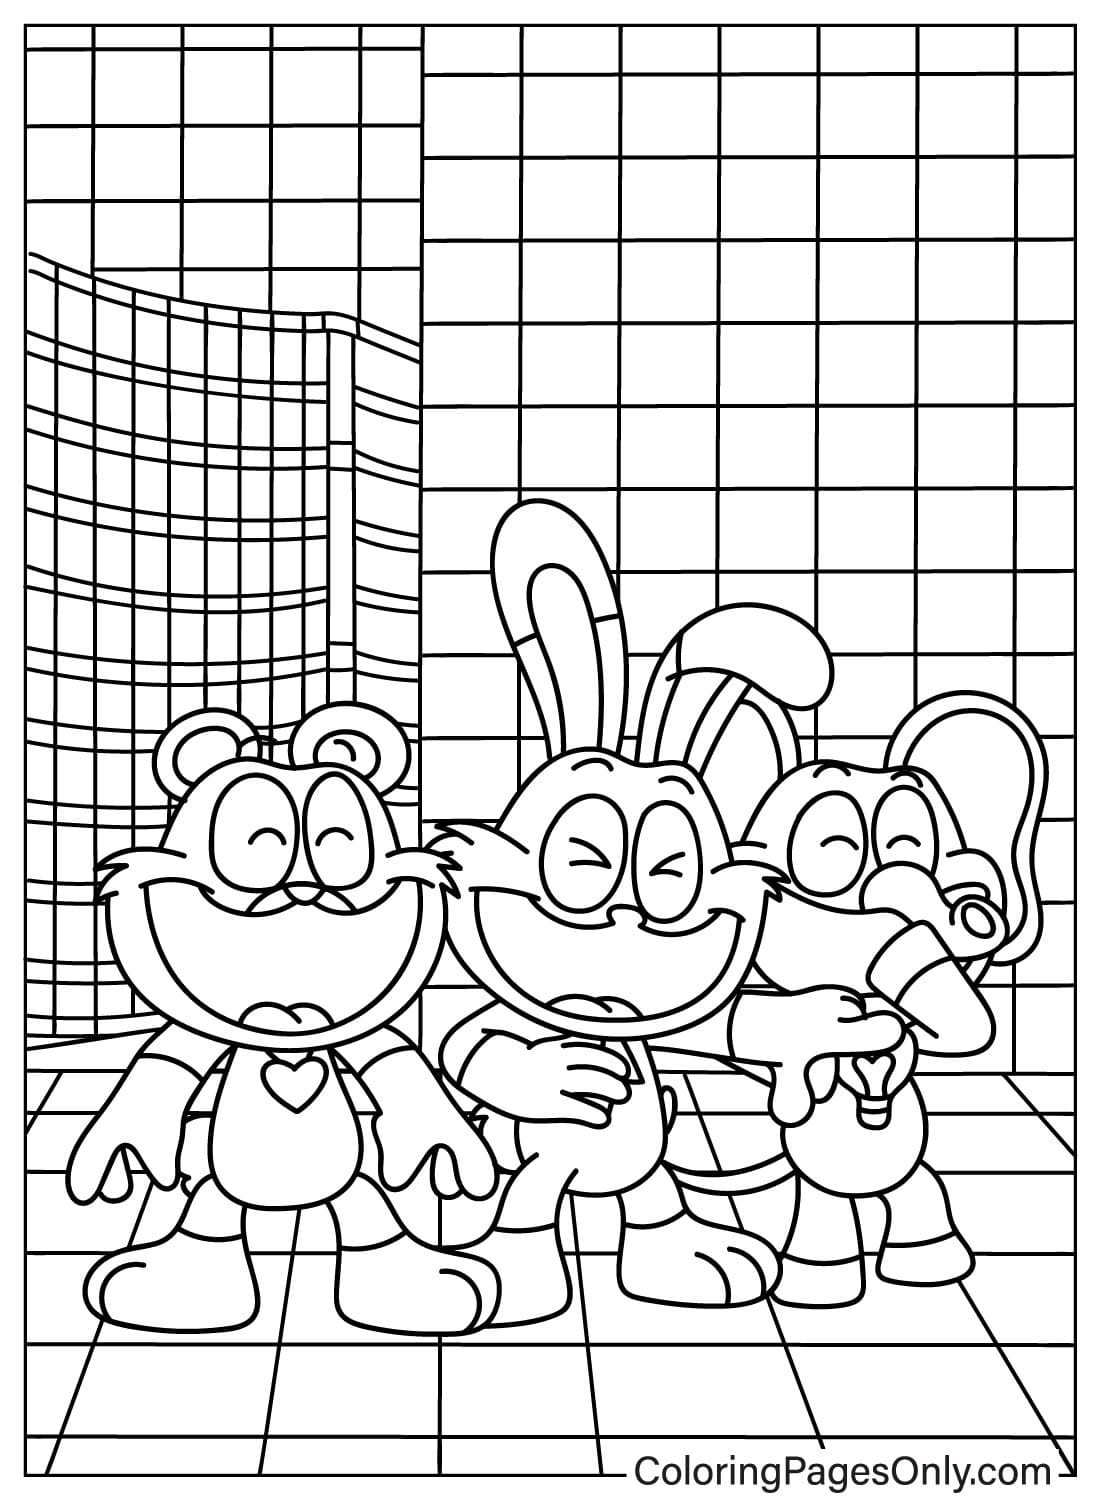 Bubba Bubbaphant 和 Hoppy Hopscotch，Bobby BearHug 来自 Hoppy Hopscotch 的着色页